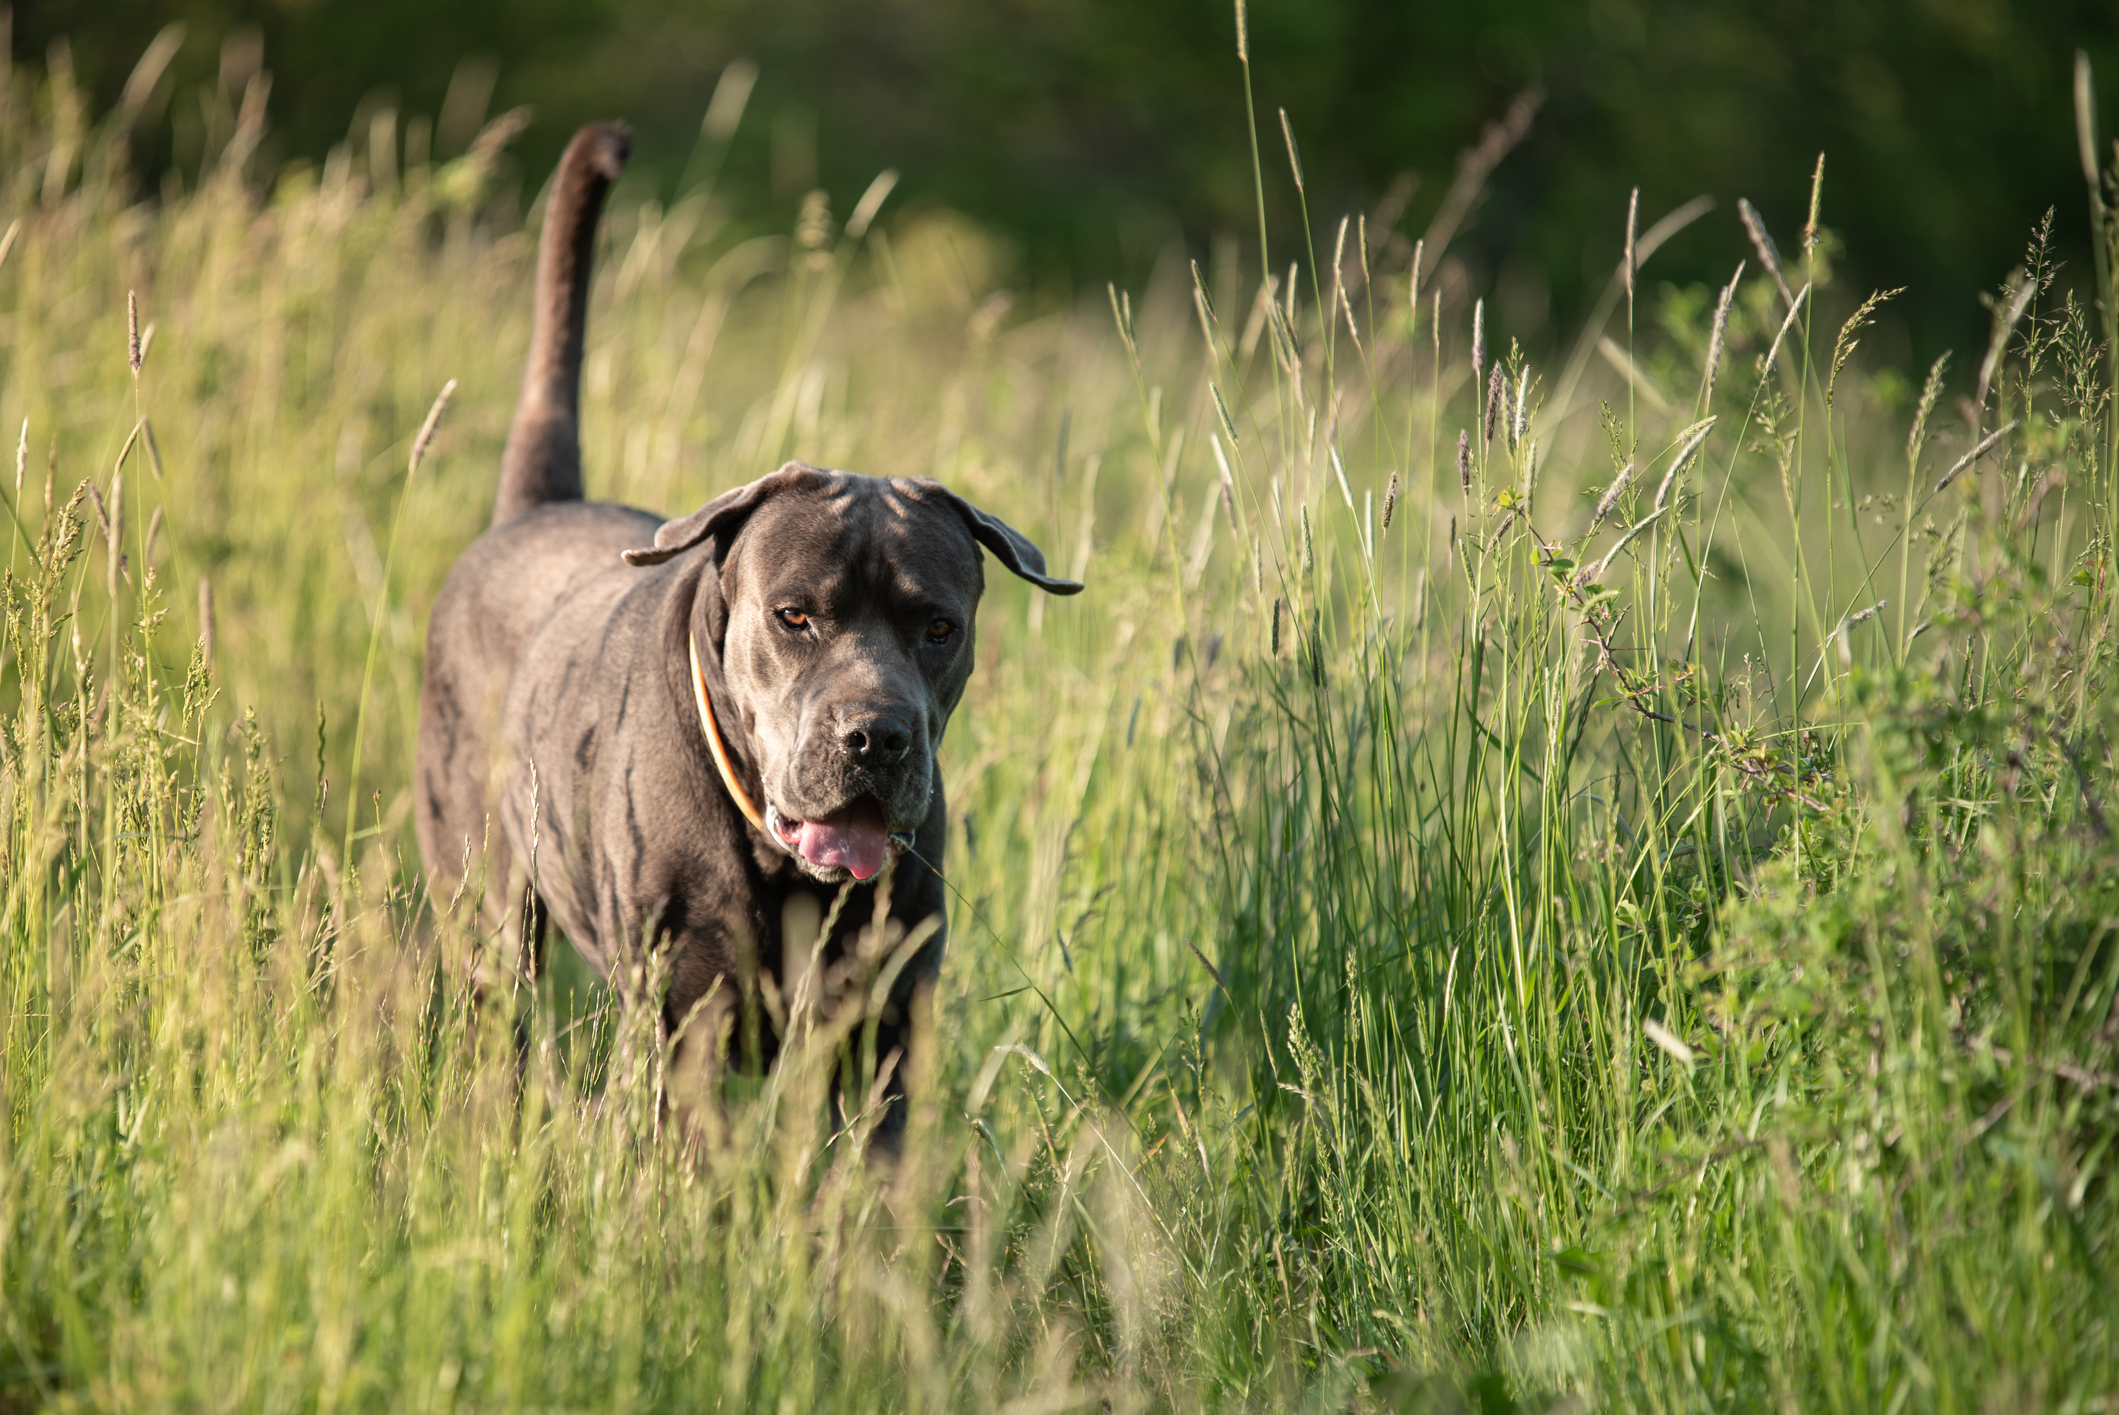 A dog pads through tall grass.